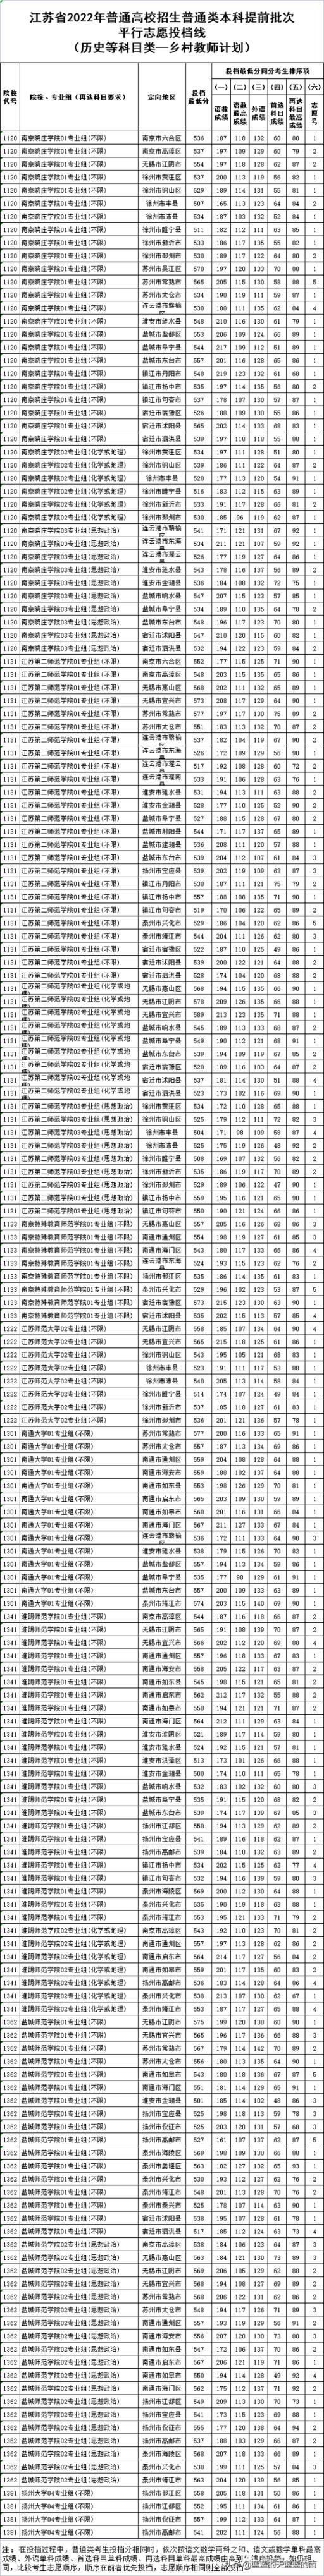 江苏省高考分数线2022排名表(江苏省2021年普通类本科提前批次征求志愿投档线)(图7)